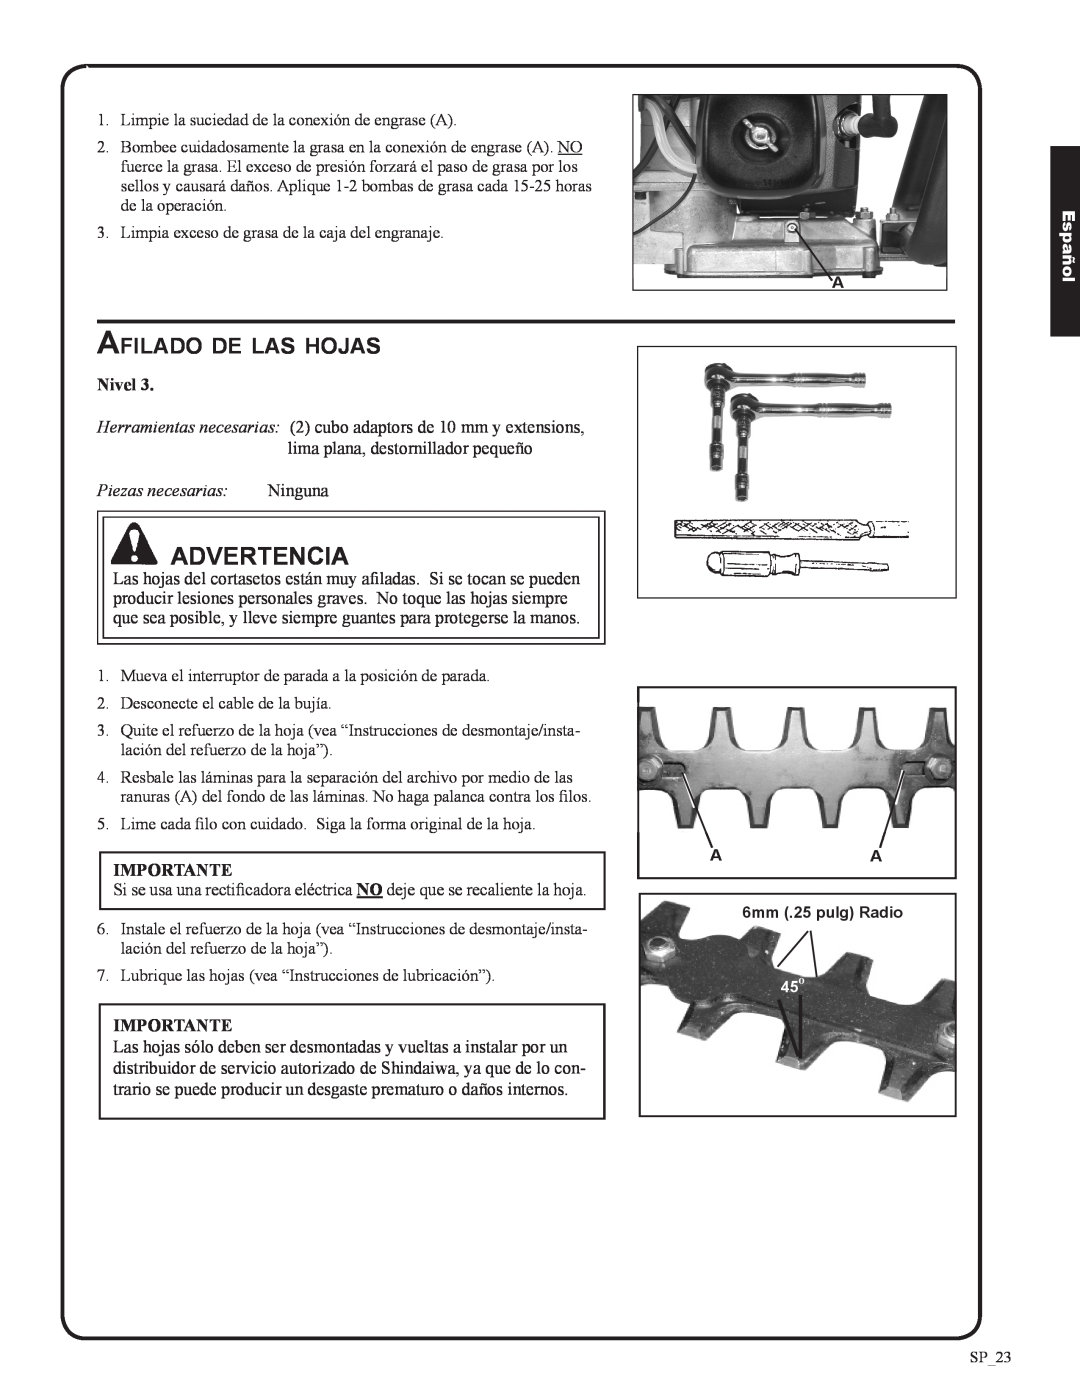 Shindaiwa 82053, DH212 manual Afilado de las hojas, Ninguna, Advertencia, Español, Piezas necesarias 